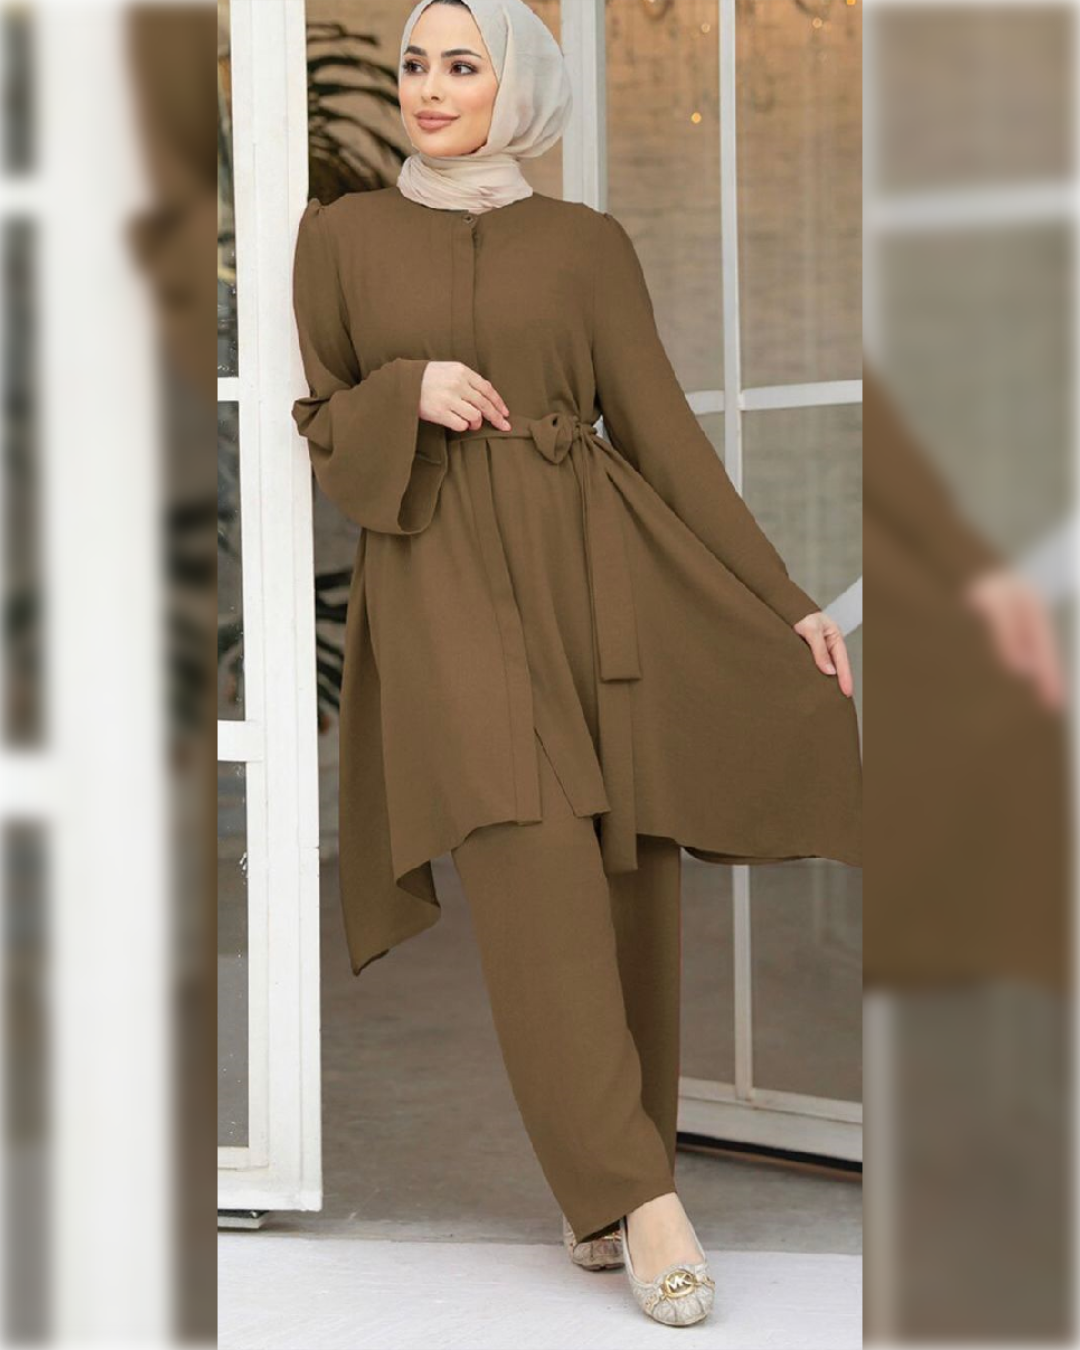 Sama Casual Aerobin 2-Pieces Outfit in Brown Shade طقم ساما الصيفي من نسيج الأيروبين مكون من قطعتين باللون البني الجميل